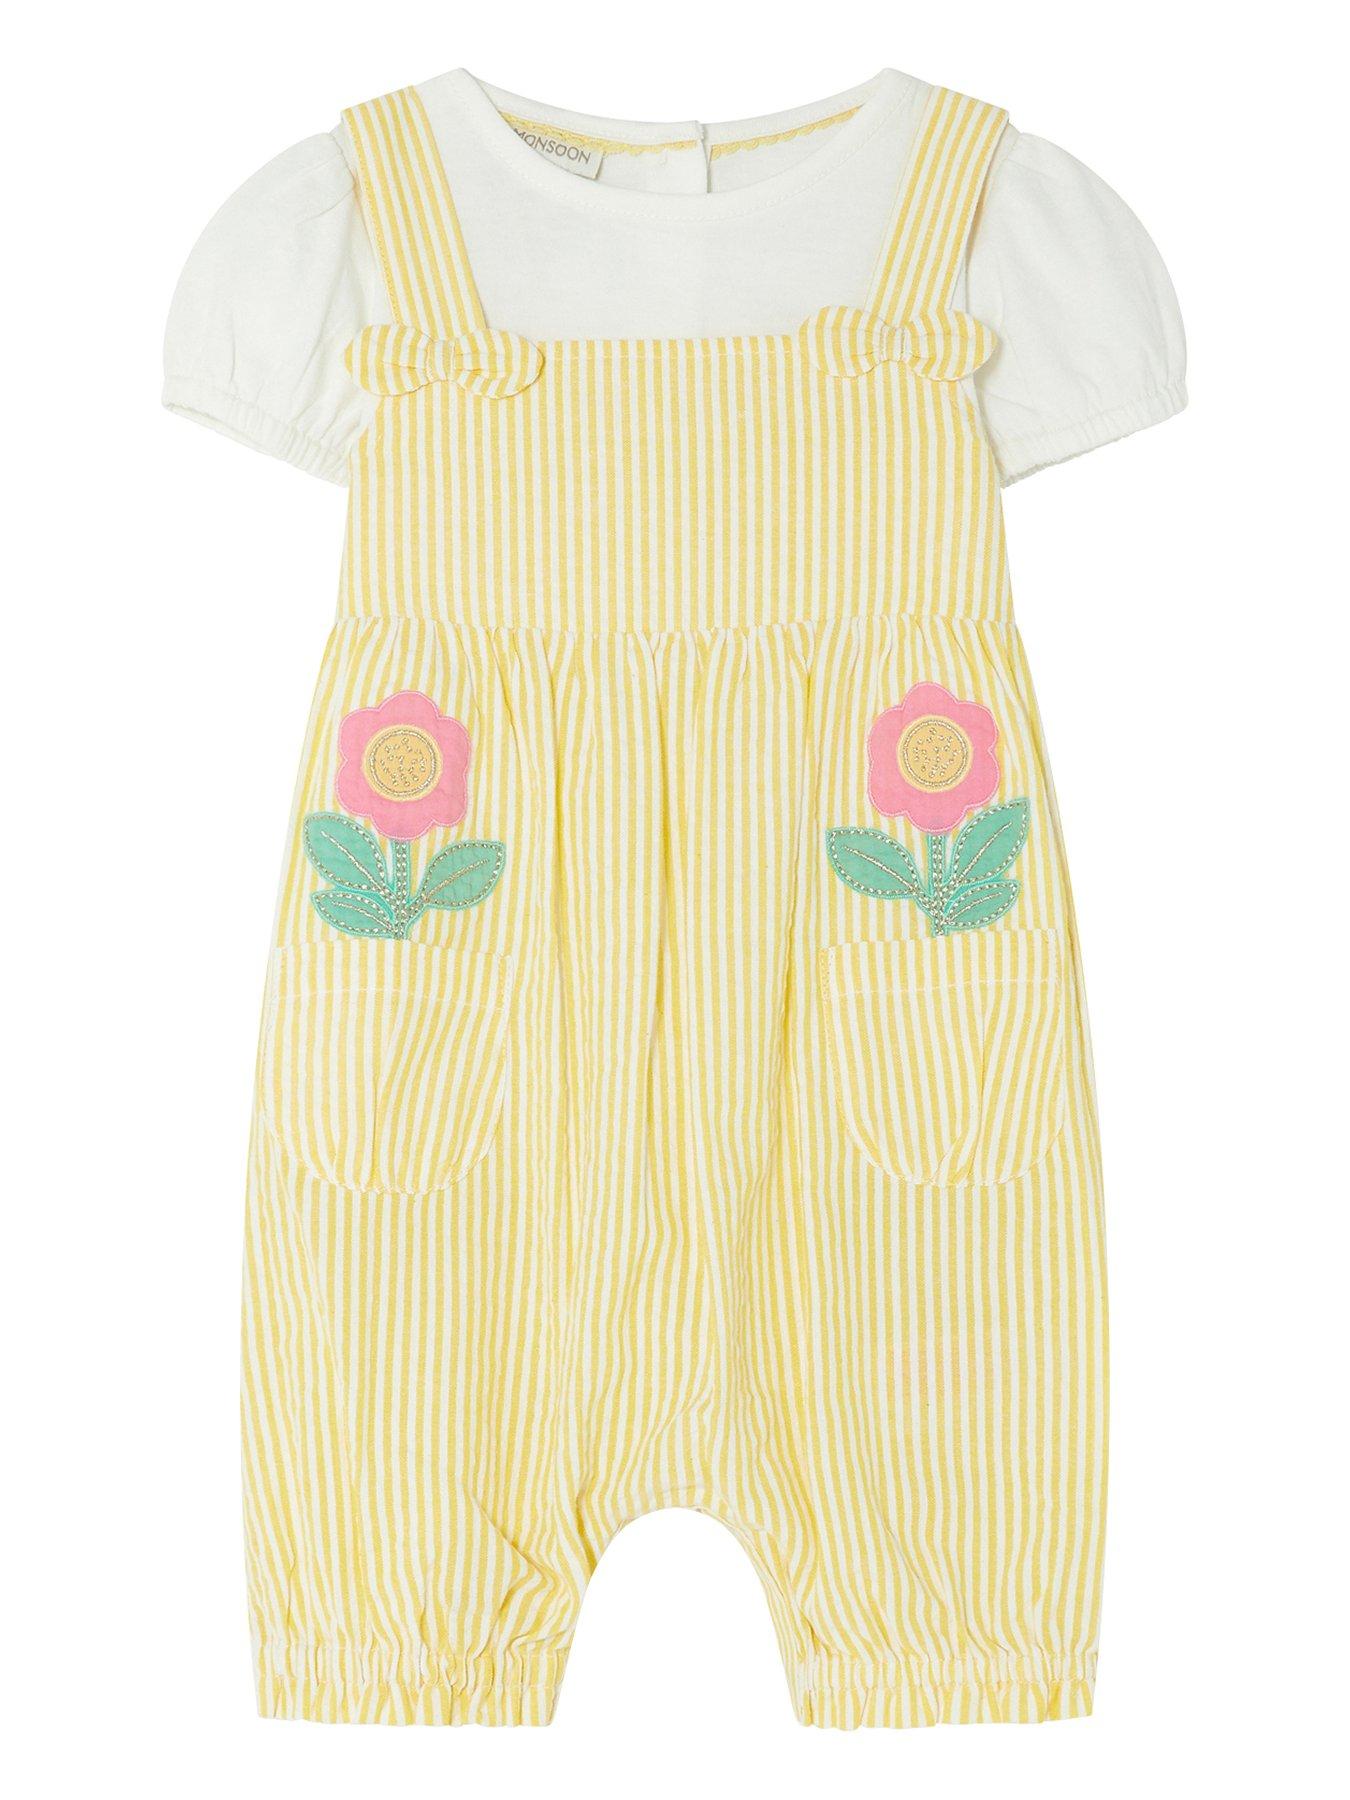  Baby Girls Seersucker Floral Stitch Romper Set - Yellow